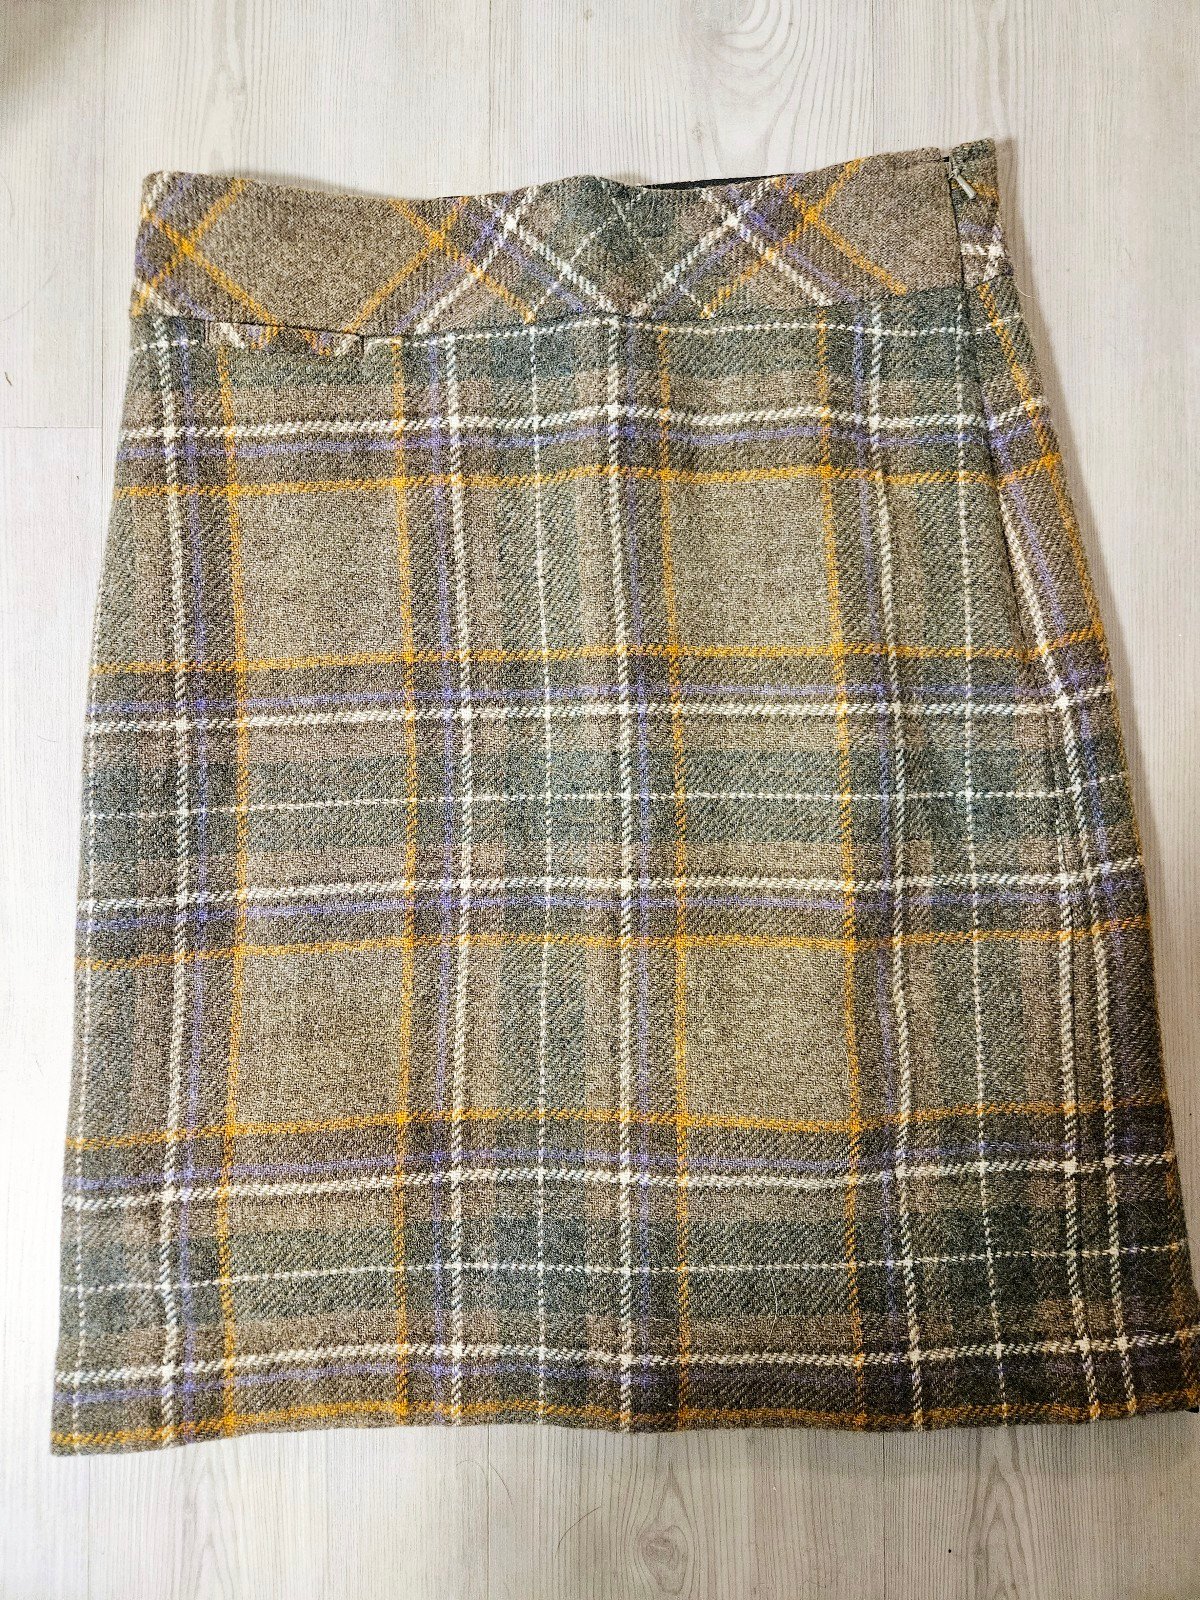 The Best Seller L L Bean Tartan Plaid Wool Skirt sz 6 M